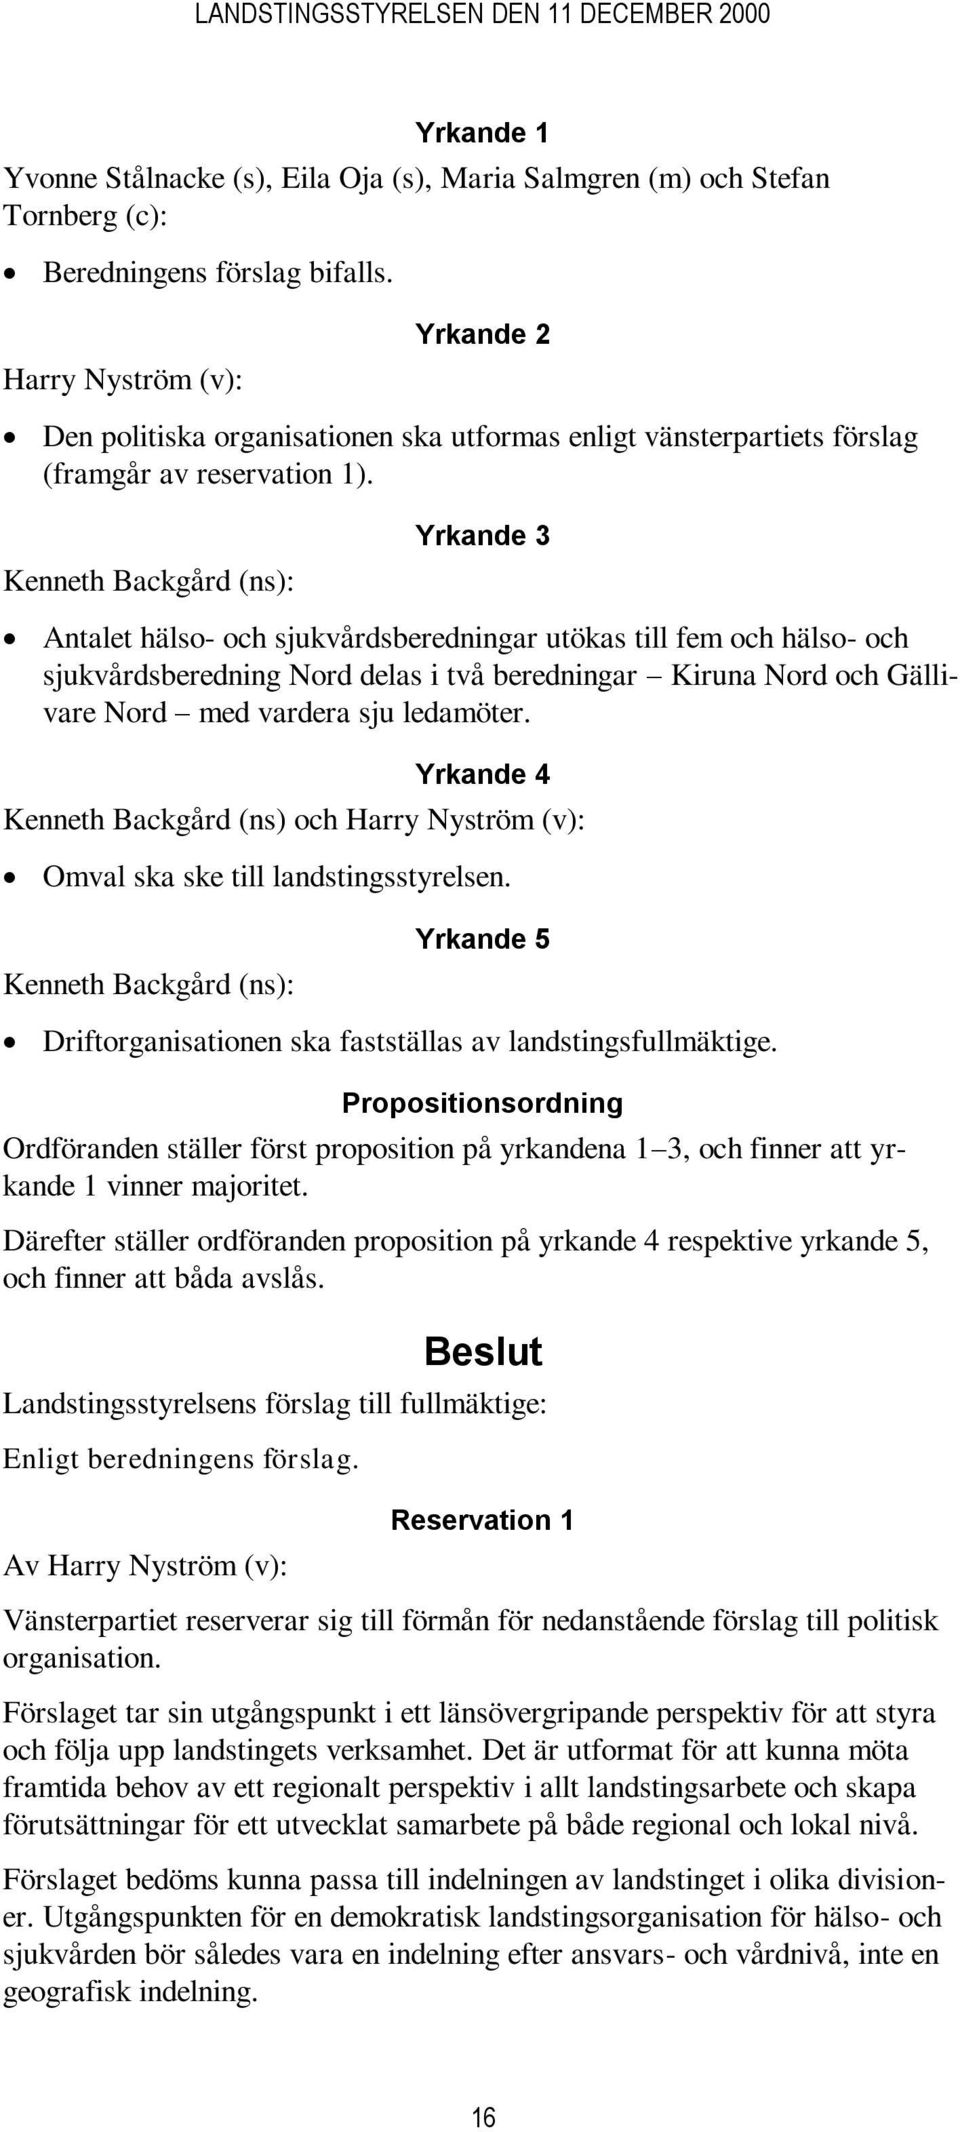 Kenneth Backgård (ns): Yrkande 3 Antalet hälso- och sjukvårdsberedningar utökas till fem och hälso- och sjukvårdsberedning Nord delas i två beredningar Kiruna Nord och Gällivare Nord med vardera sju